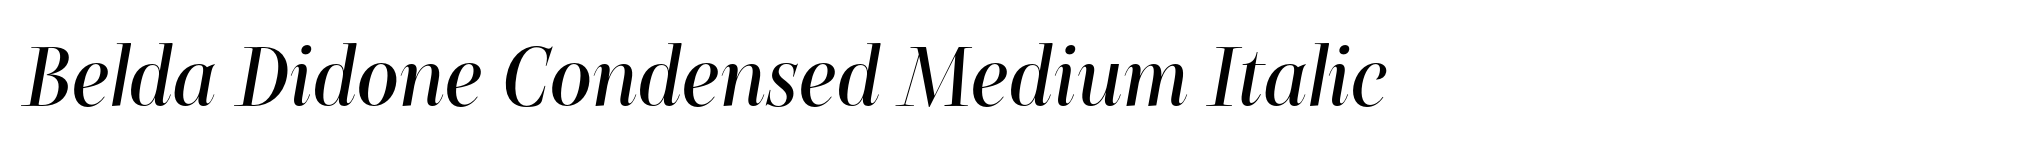 Belda Didone Condensed Medium Italic image